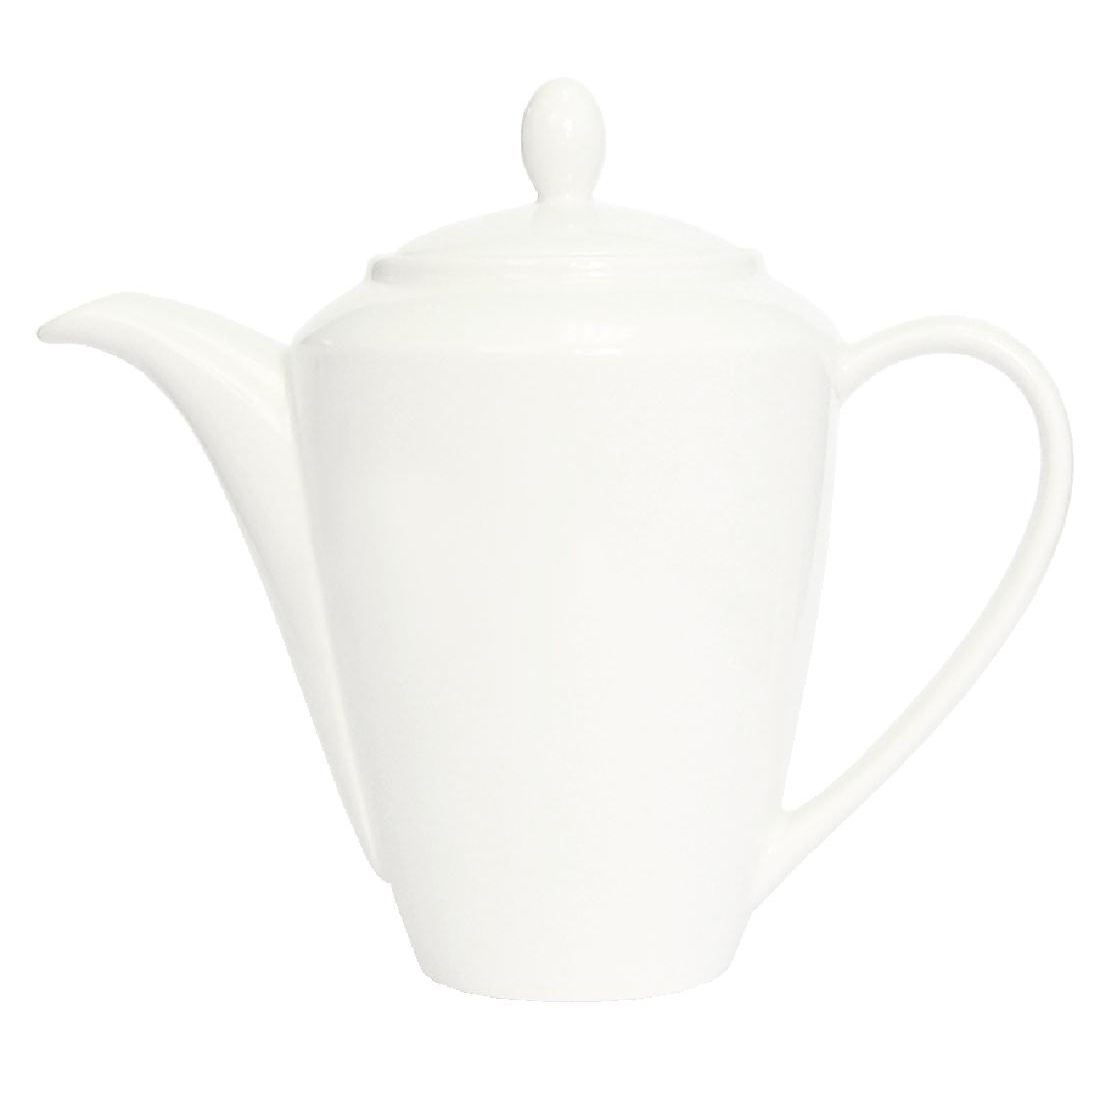 Steelite Simplicity White Harmony Coffee Pots 312ml